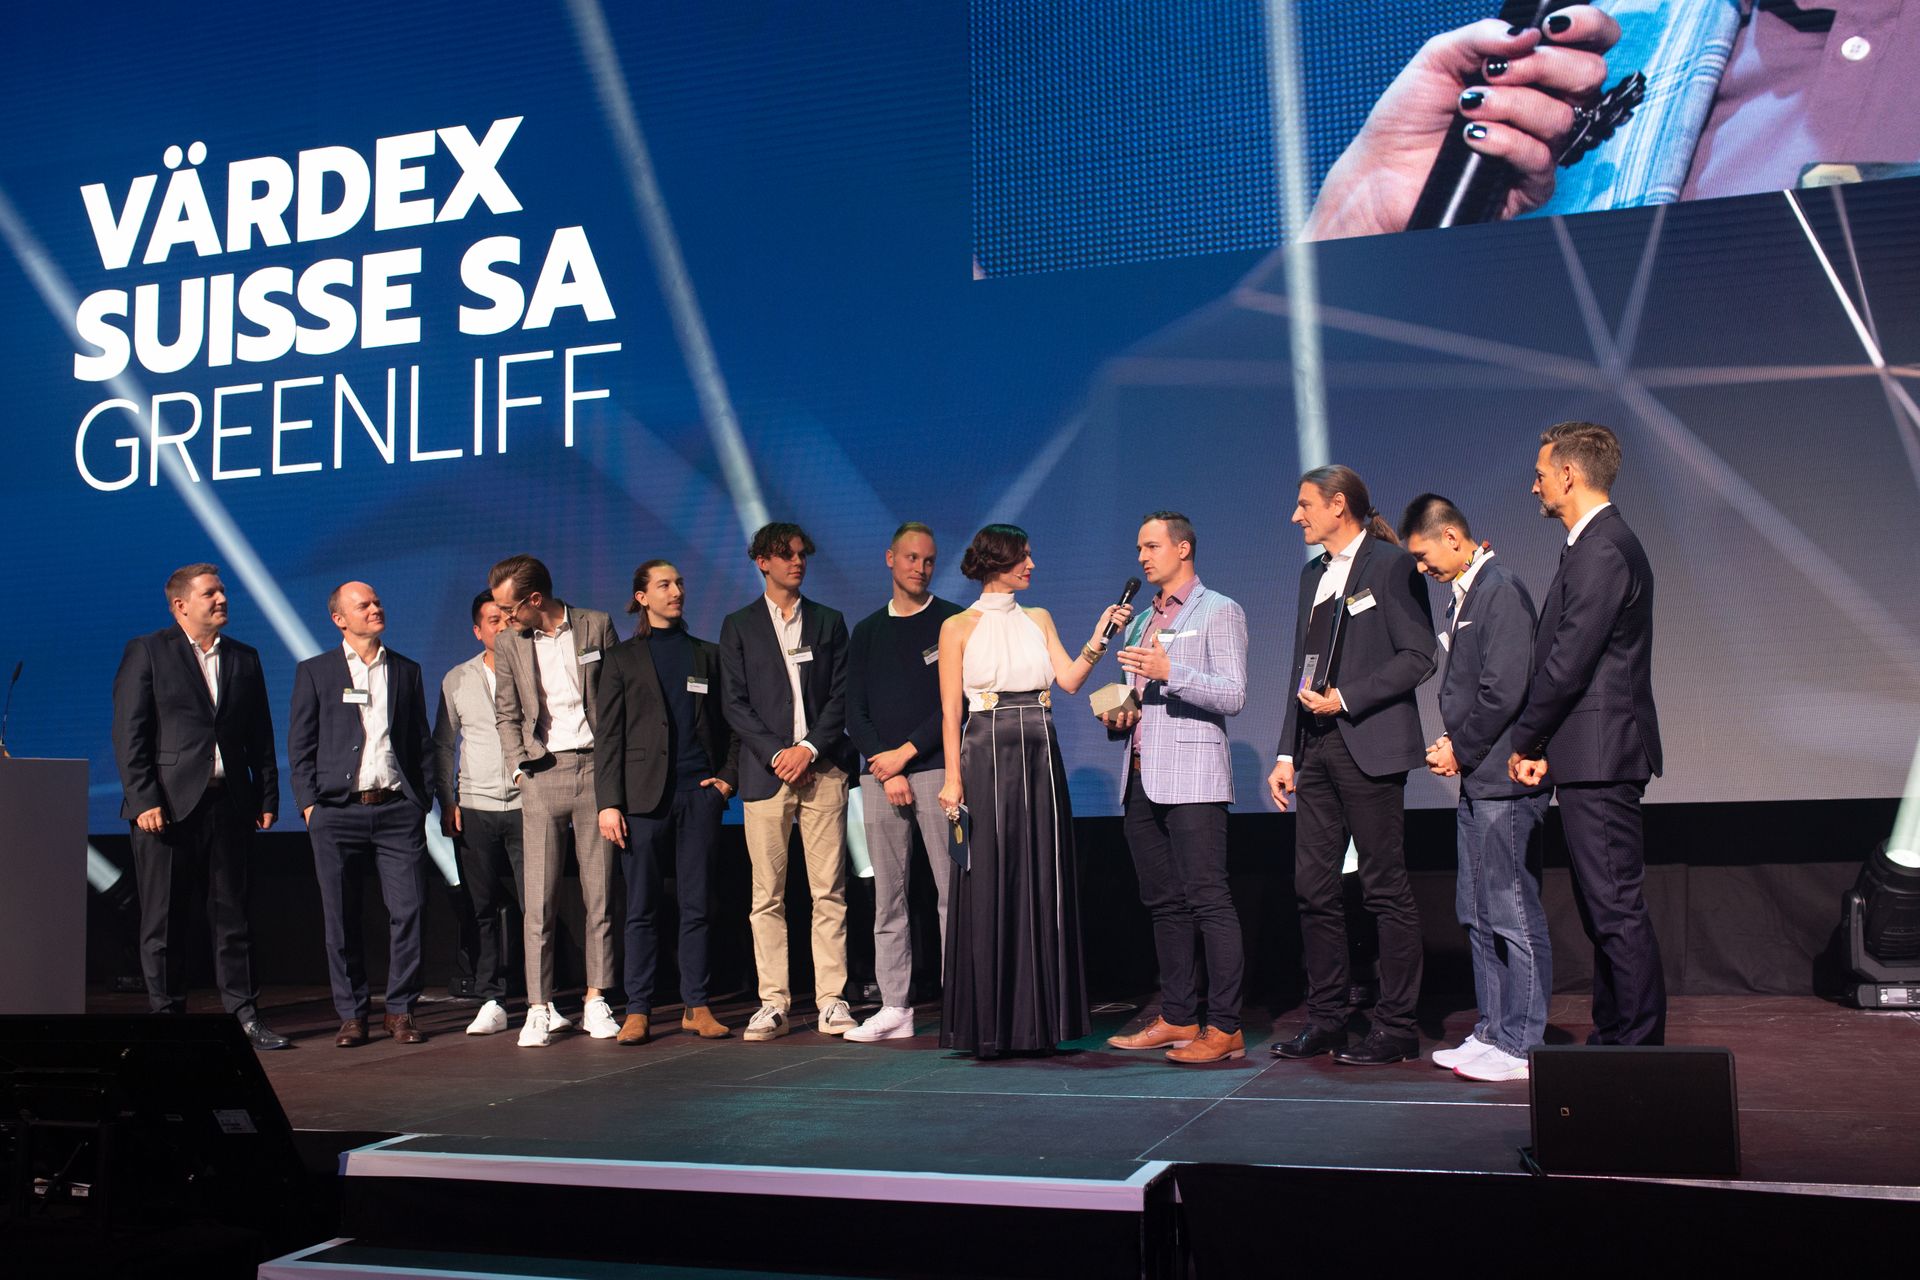 Le società "Värdex Suisse" e "Greenliff" si sono aggiudicati i due migliori premi "Highest Quality" alla premiazione dei "Digital Economy Award" della Svizzera